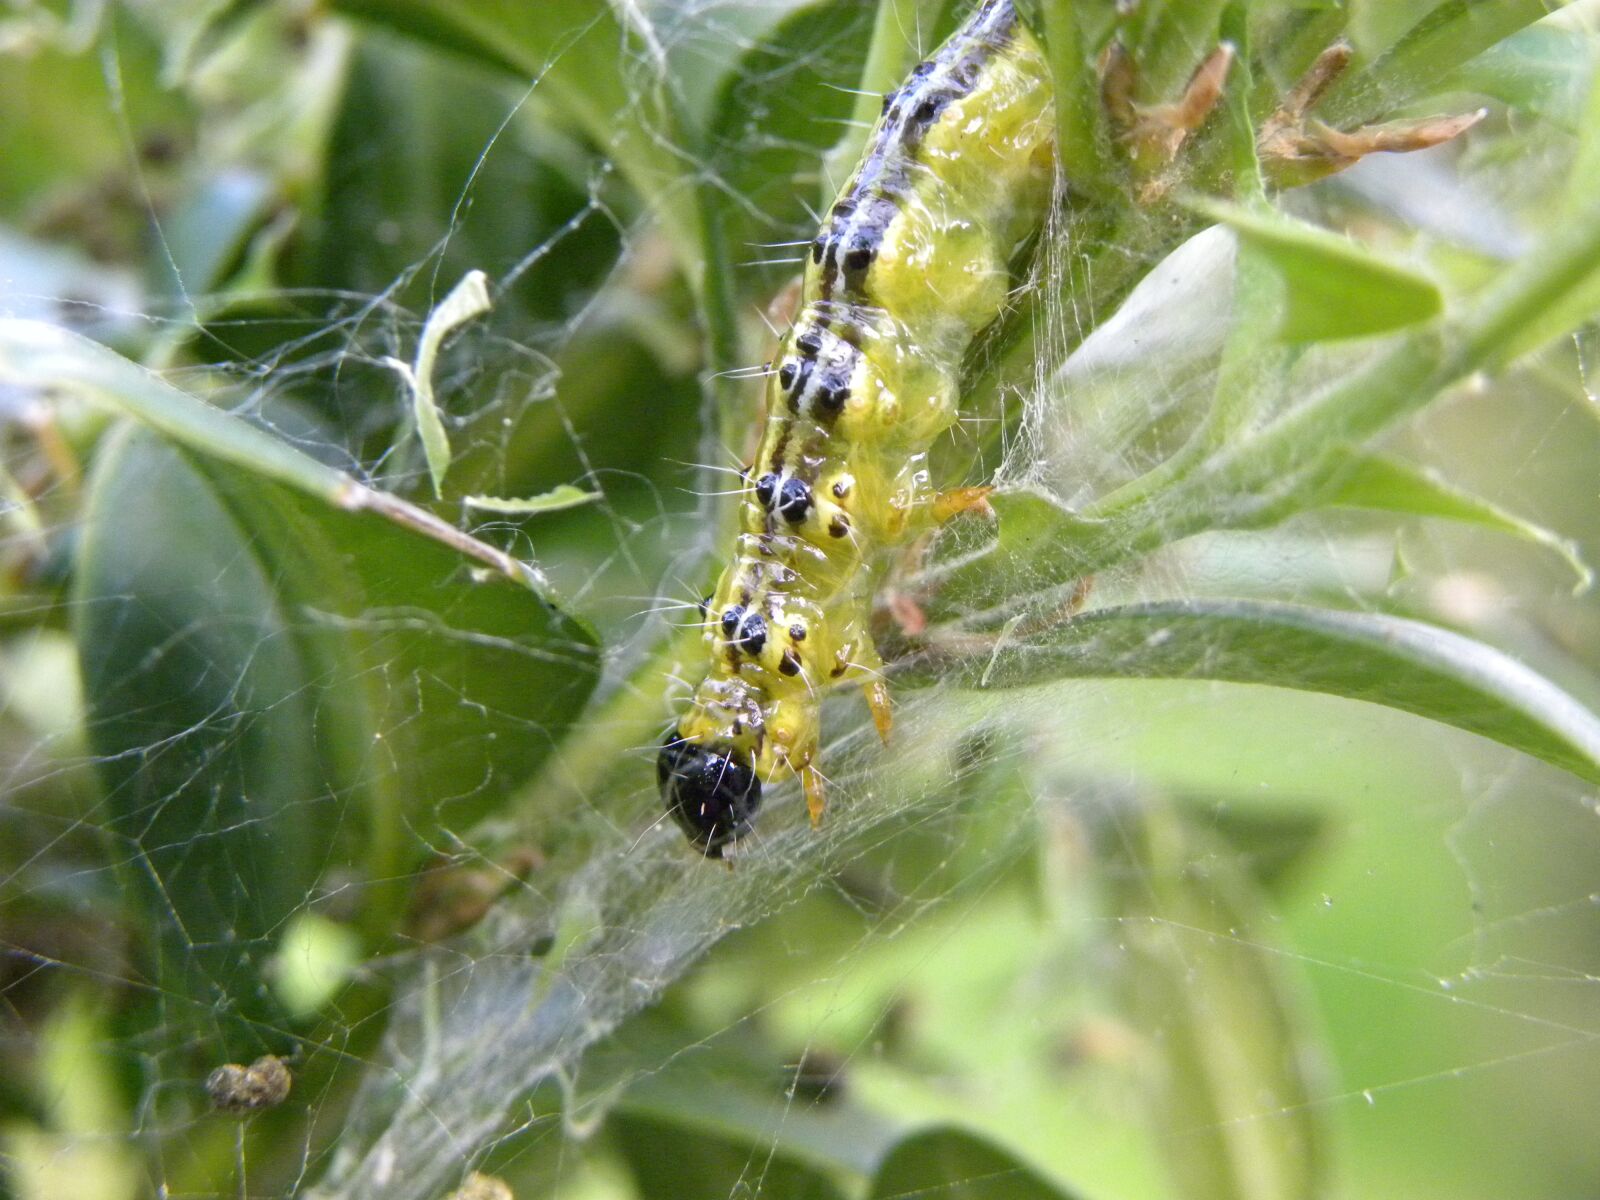 Nikon Coolpix P90 sample photo. Bug, nature, caterpillar photography